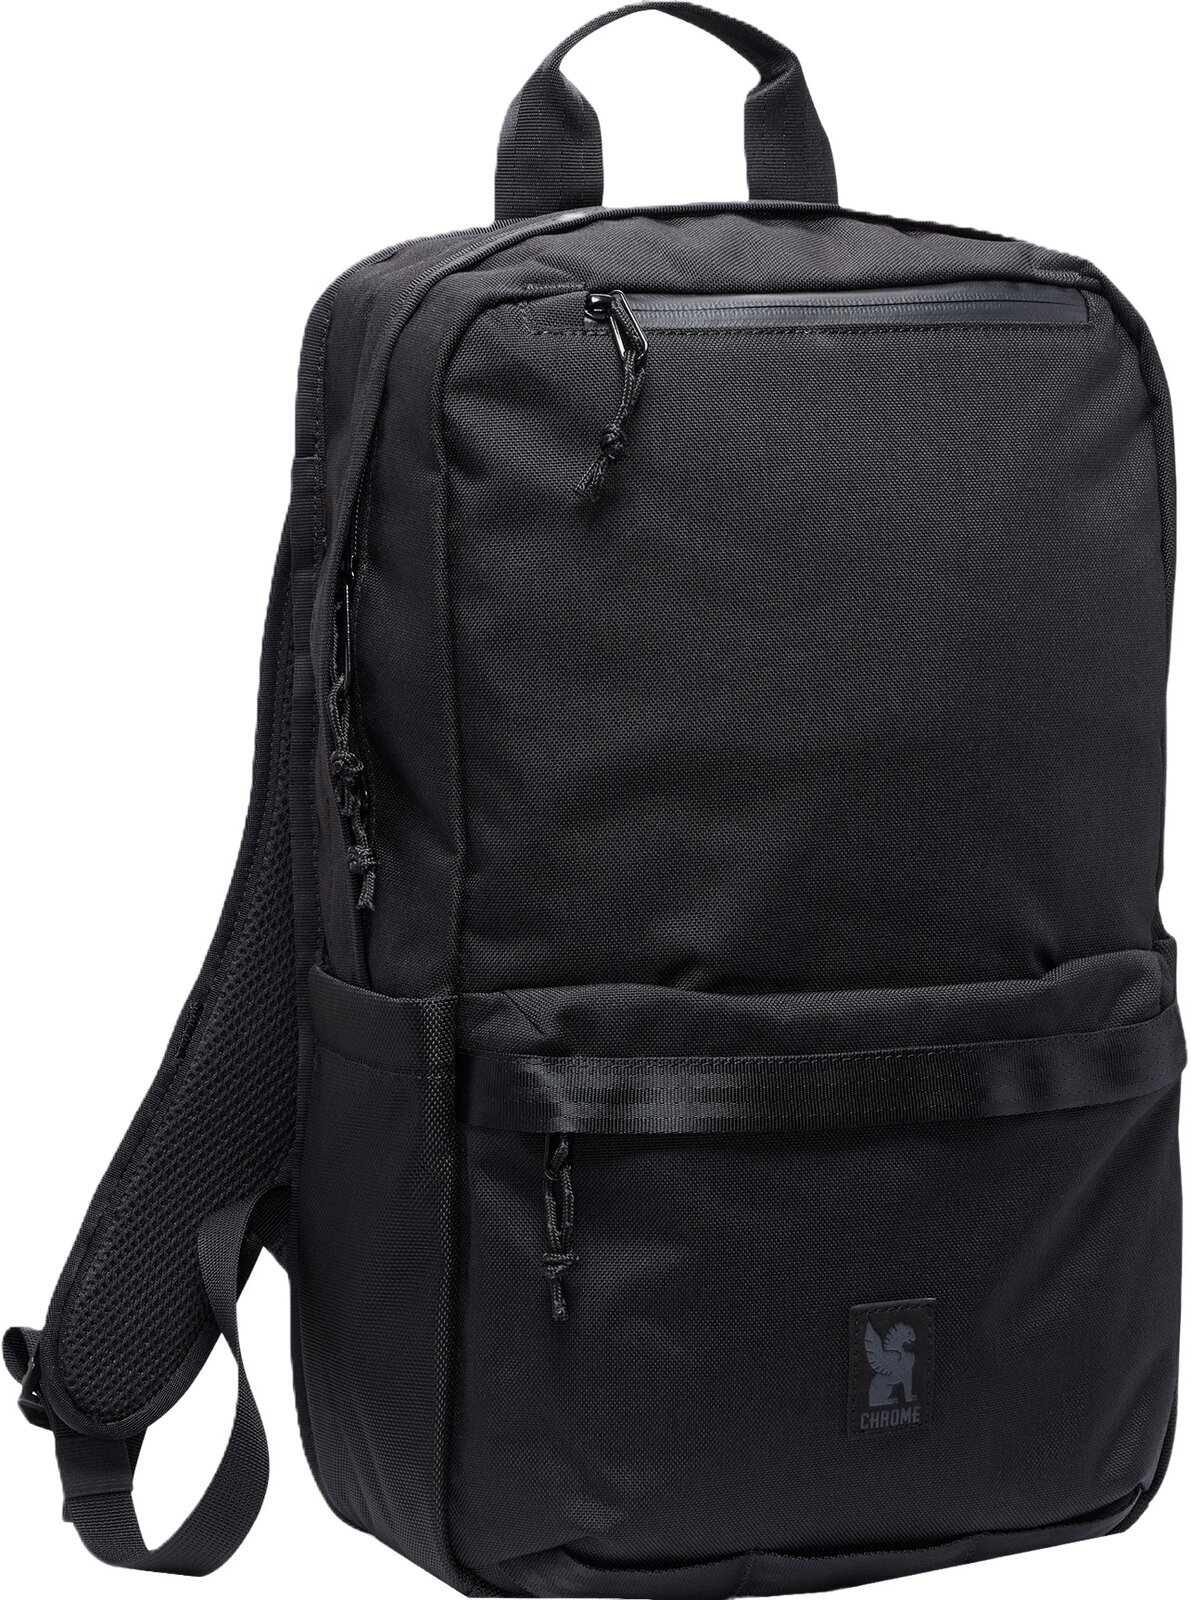 Livsstil Ryggsäck / väska Chrome Hondo Backpack Black 18 L Ryggsäck